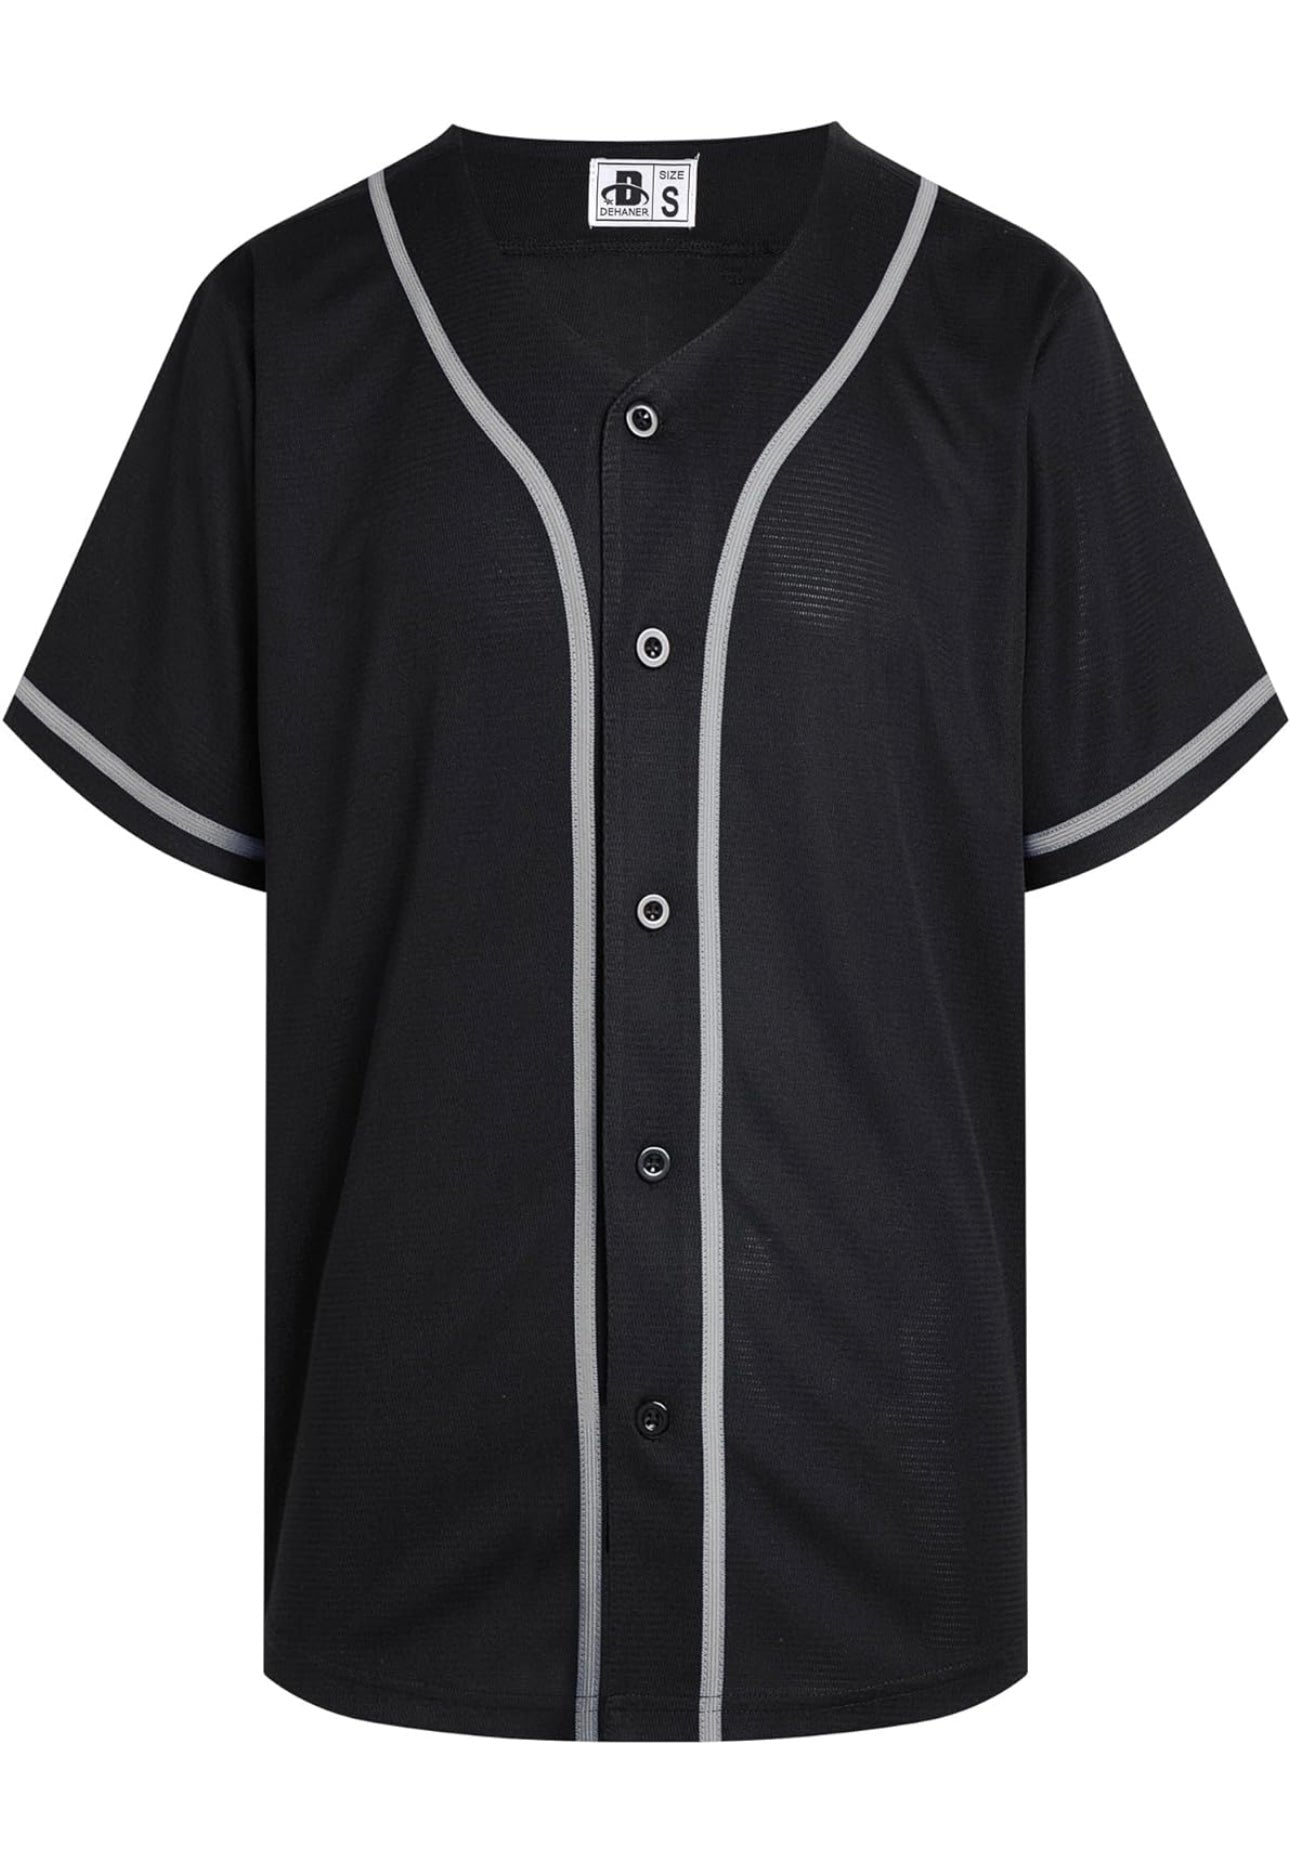 Personalized Baseball Jersey